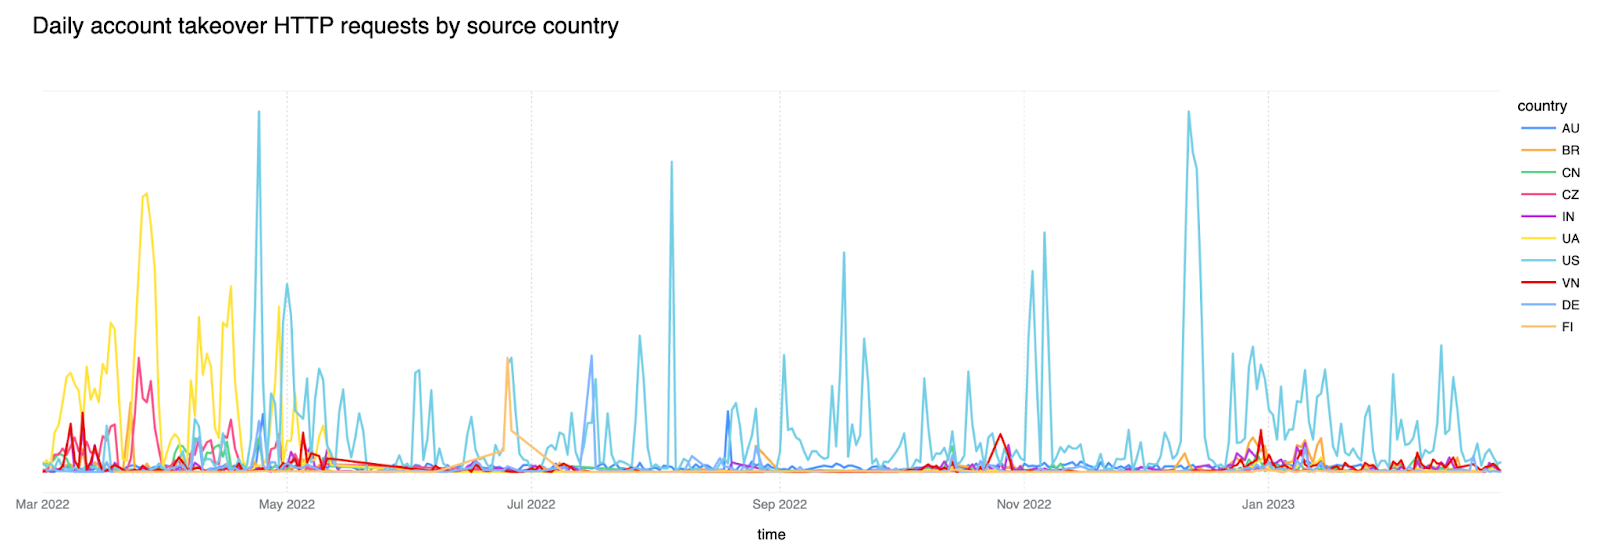 Solicitudes HTTP de apropiación de cuentas al día por país durante los últimos 12 meses